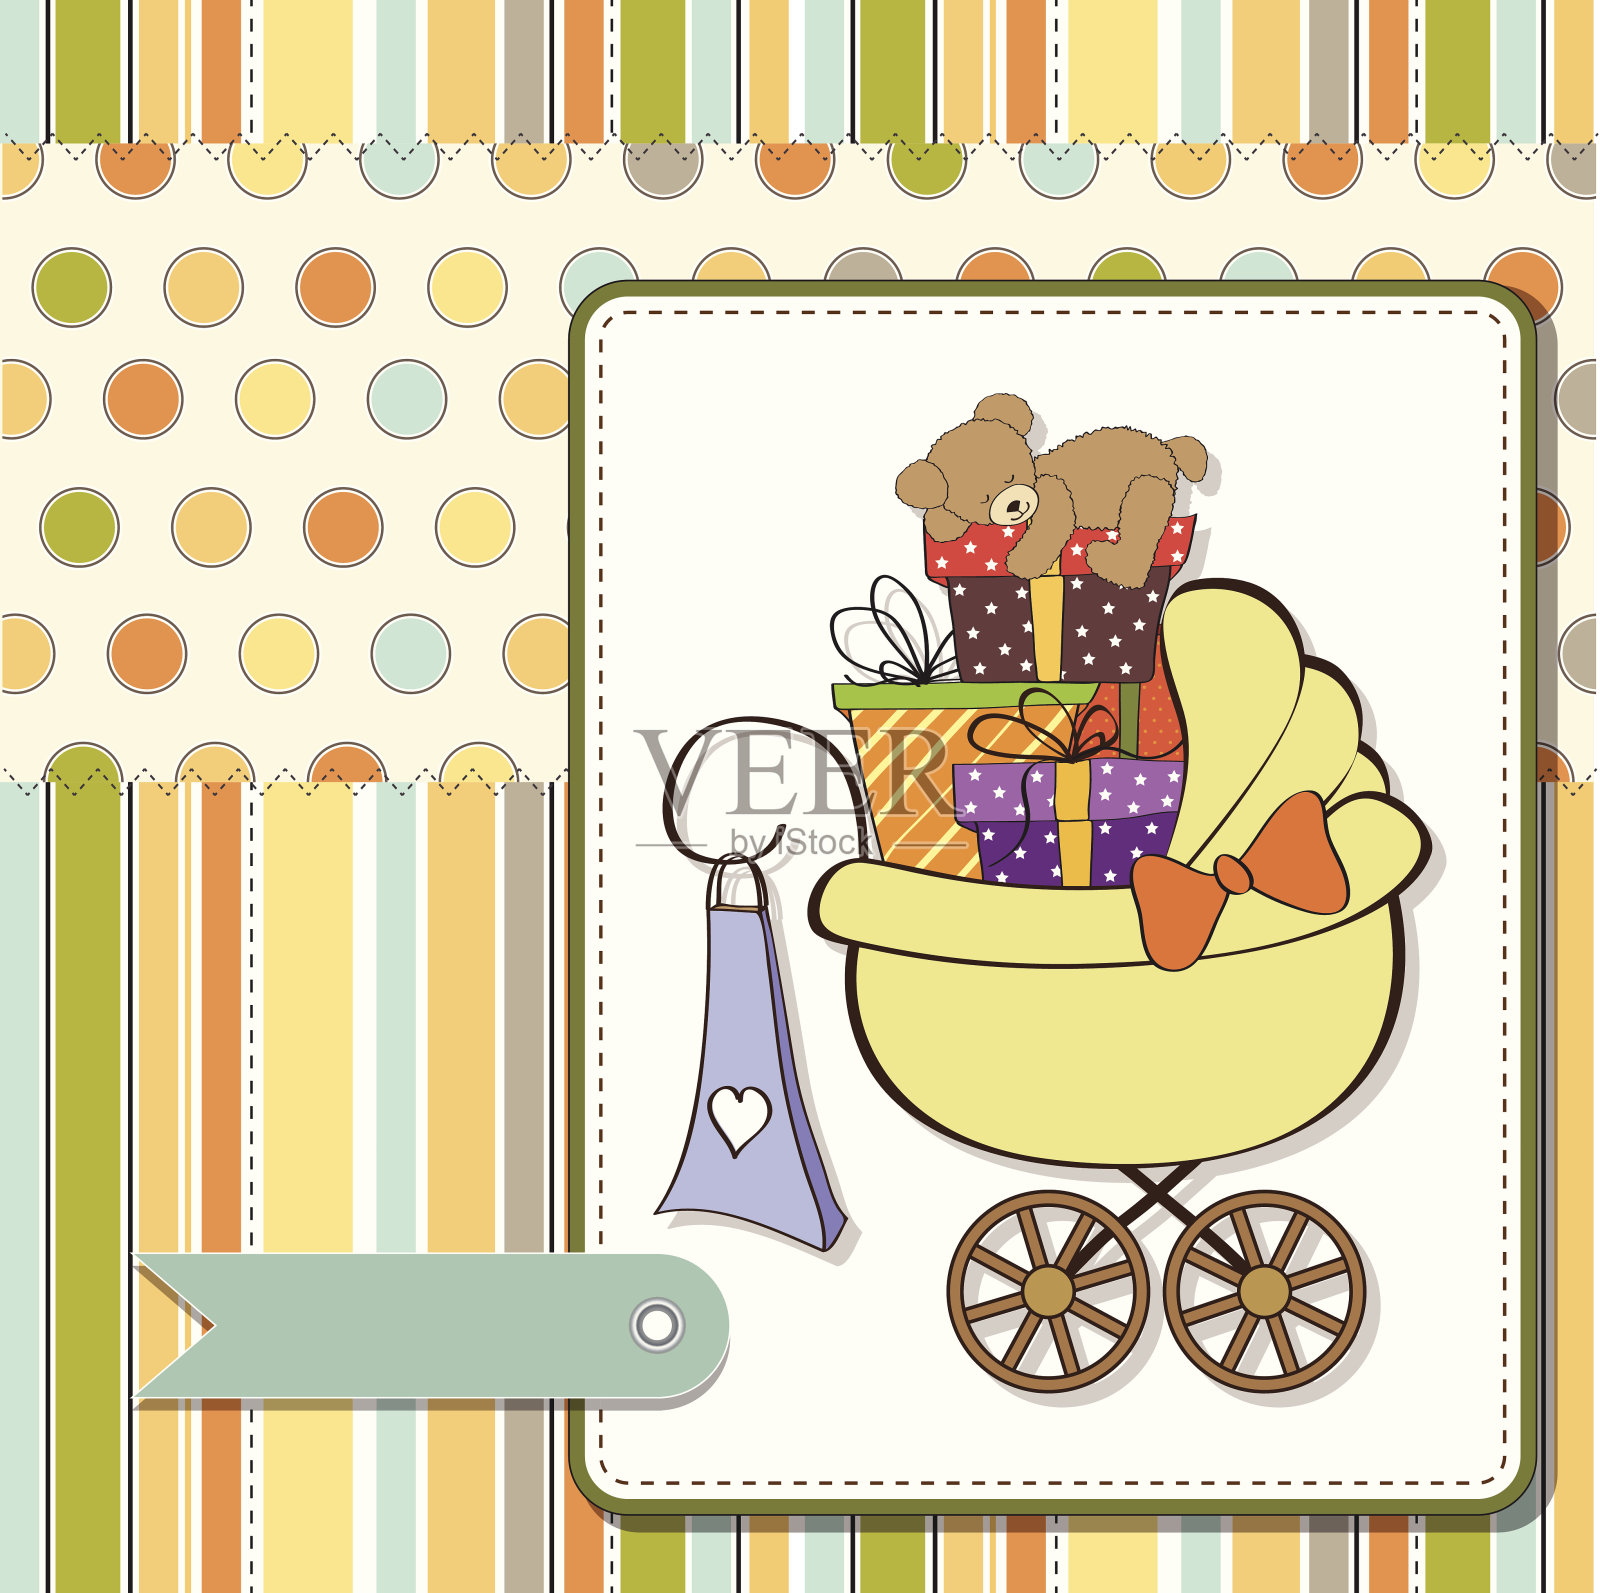 婴儿送礼卡和礼品盒设计模板素材